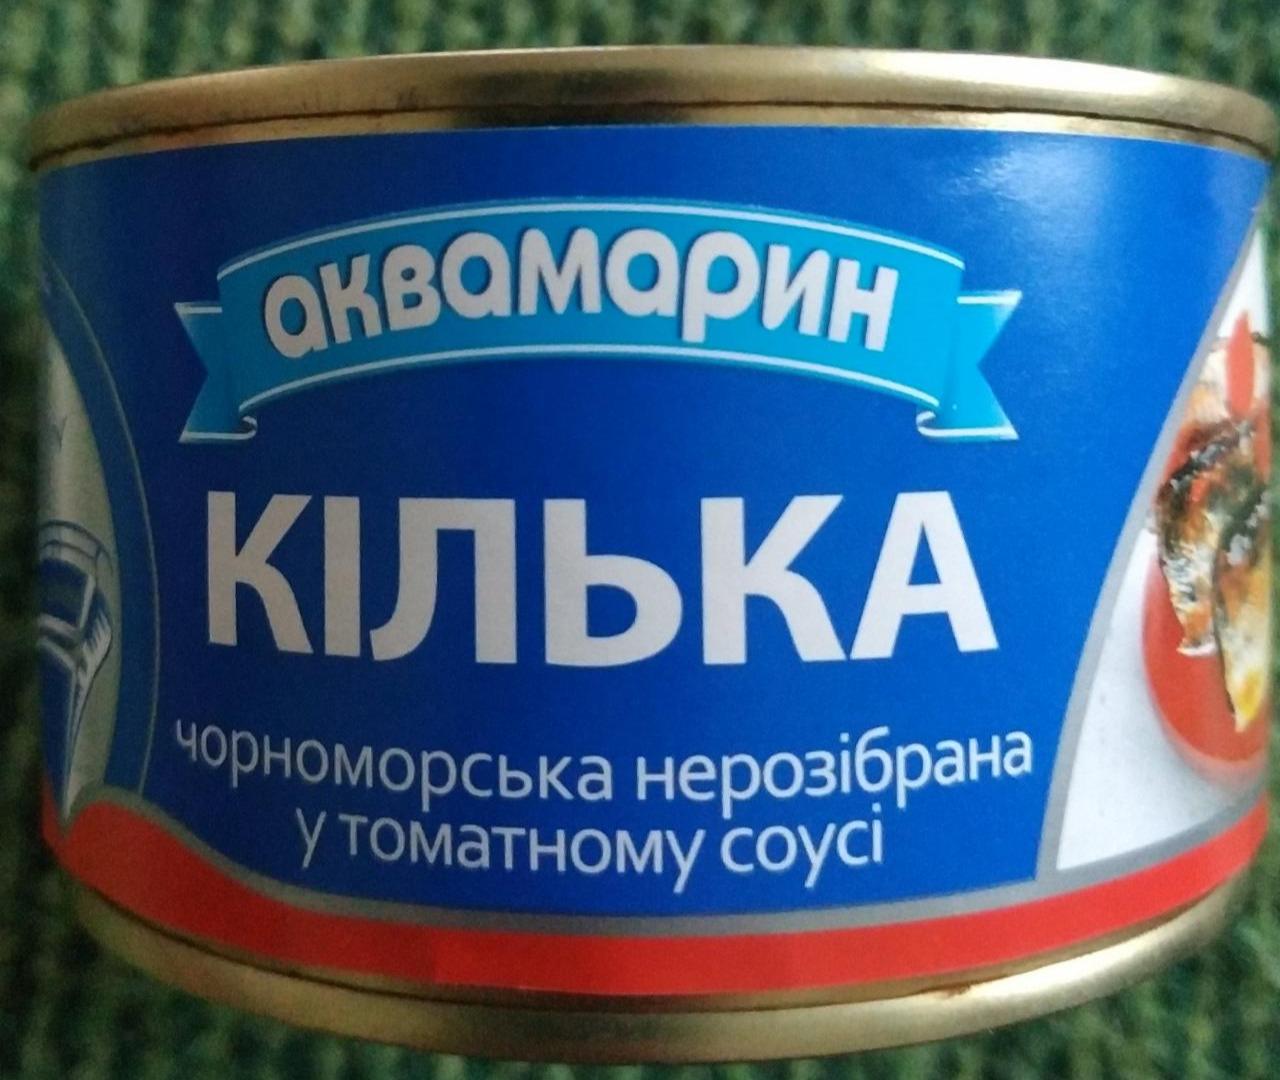 Фото - Килька черноморская неразделанная в томатном соусе Аквамарин